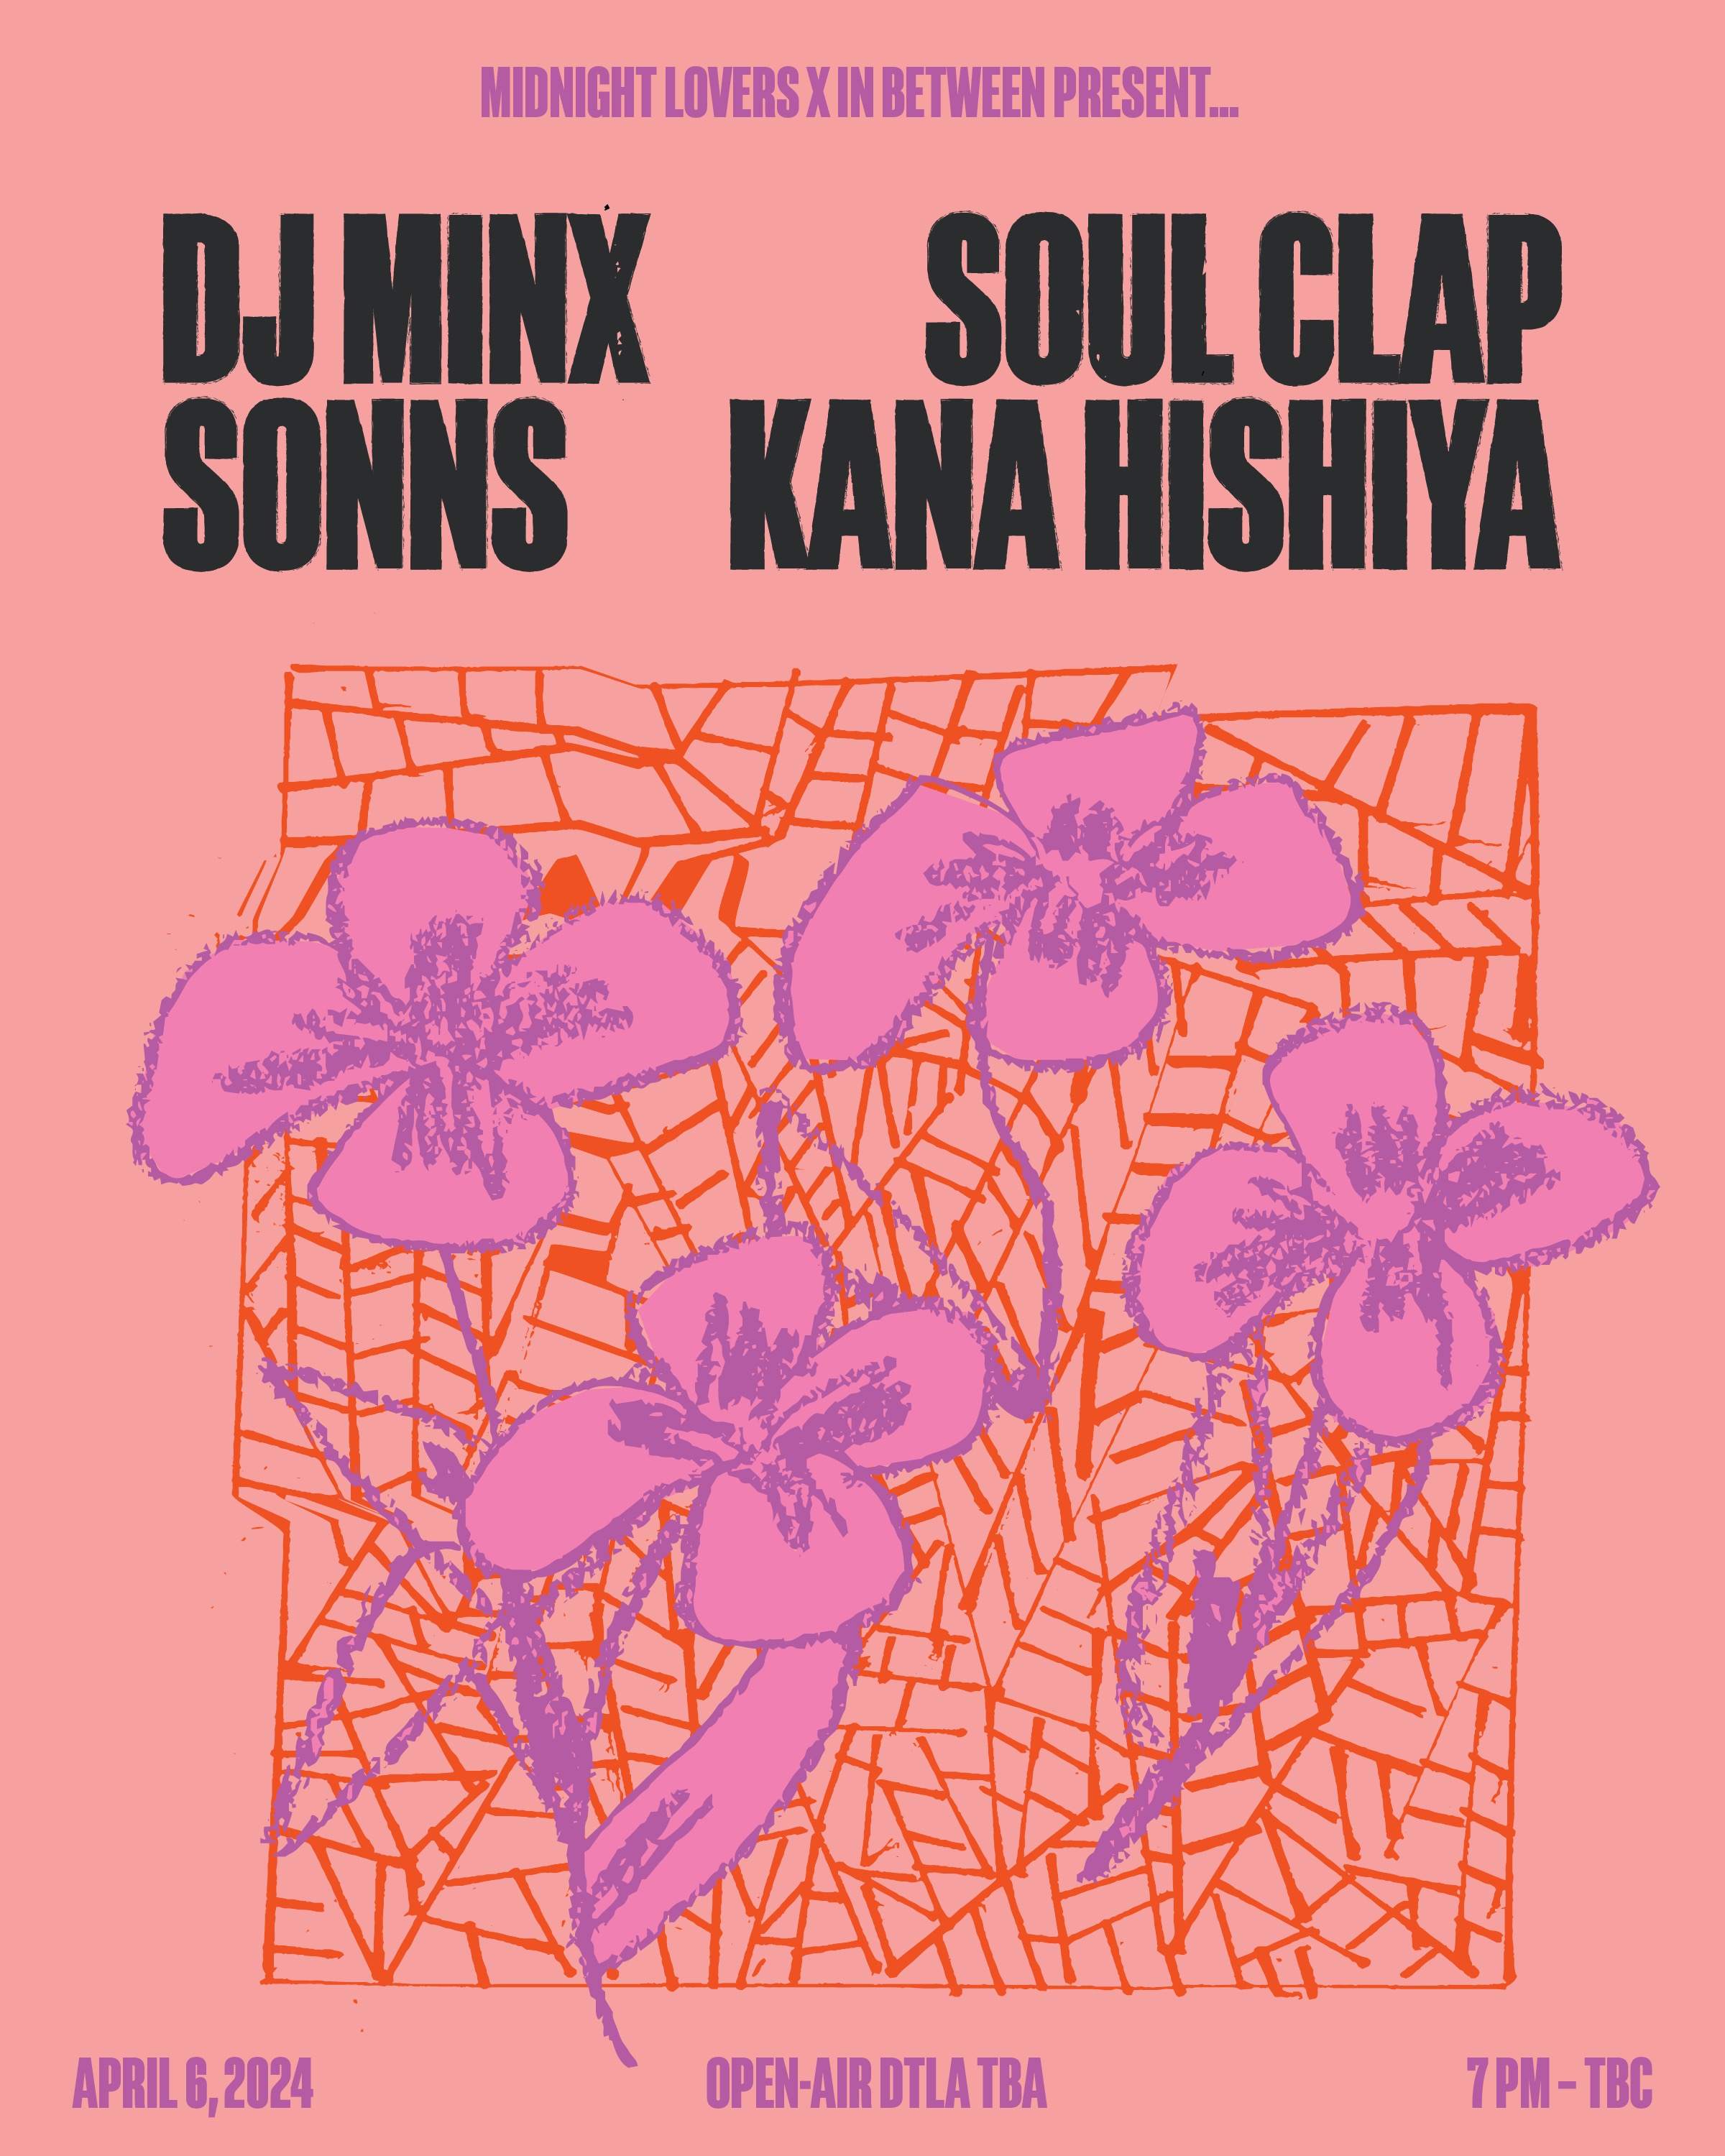 Midnight Lovers & In Between present Soul Clap & DJ Minx  - フライヤー表